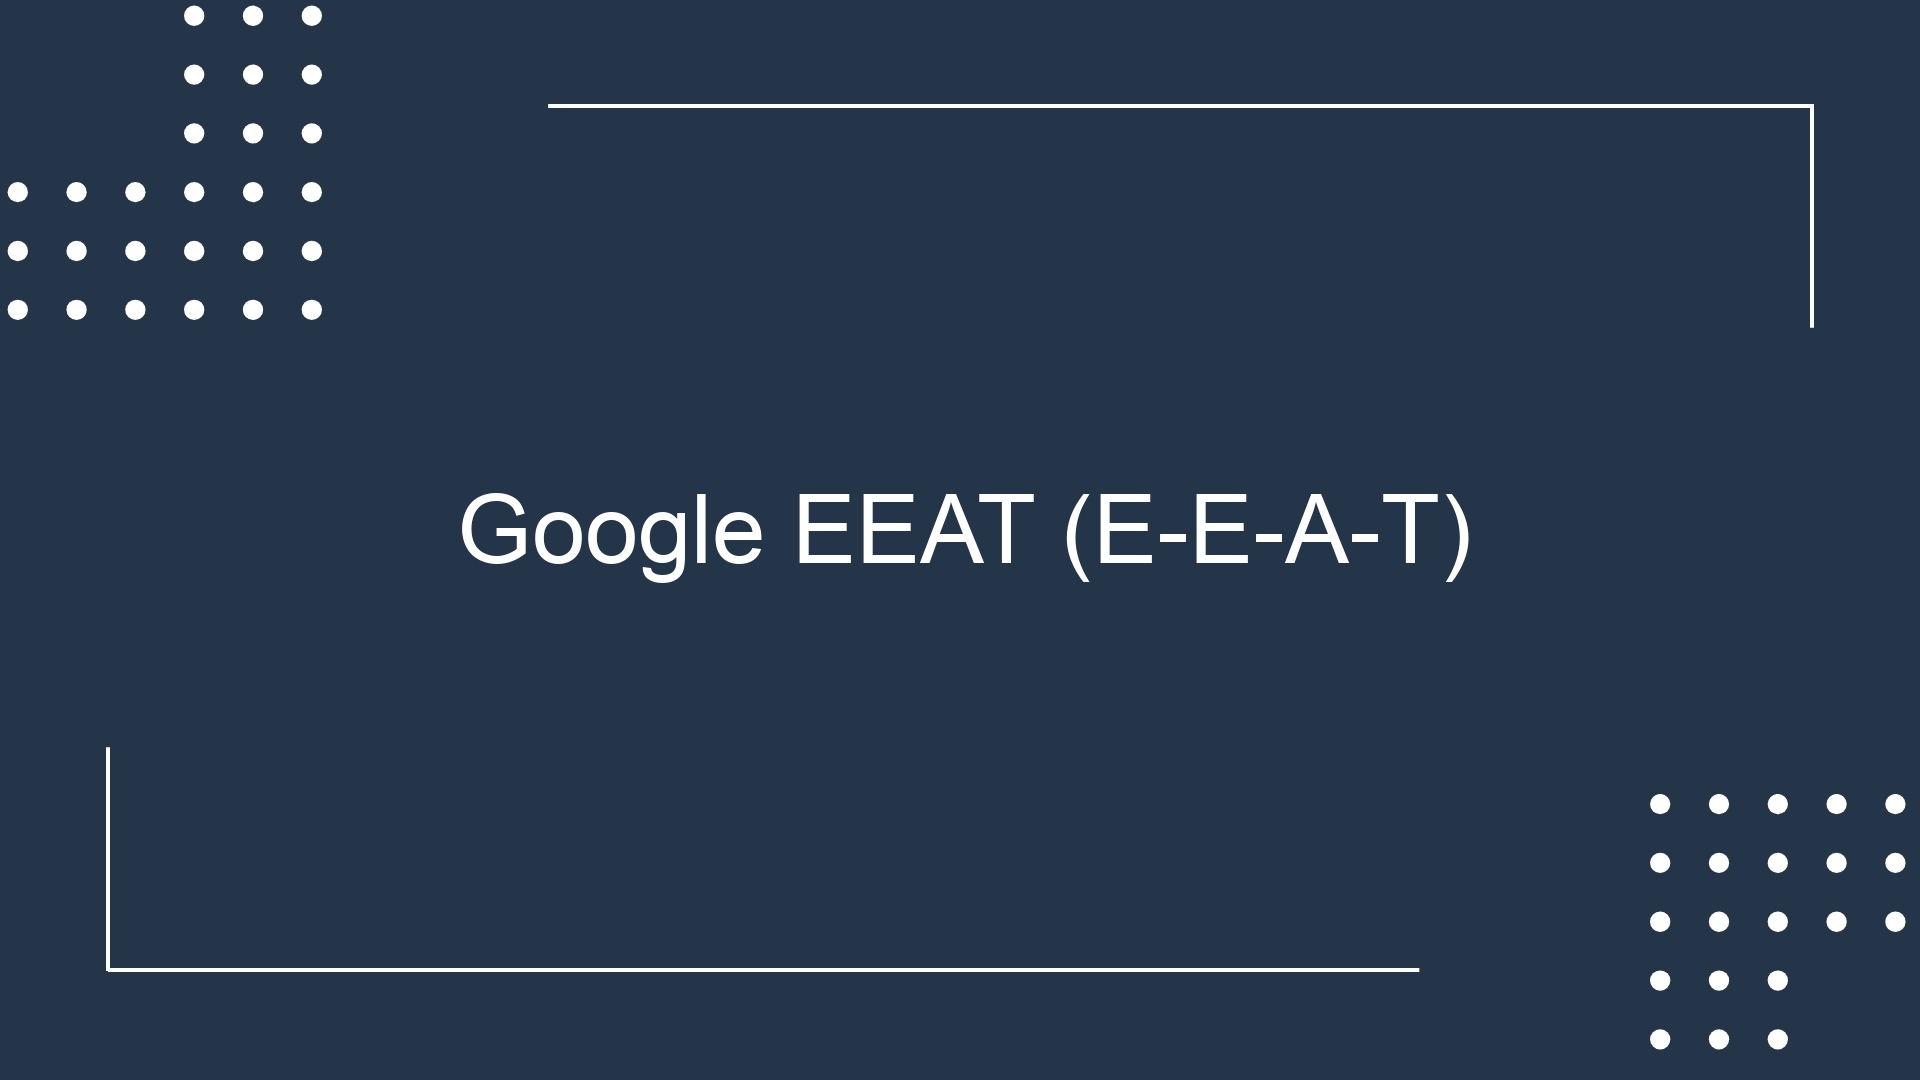 Google EEAT (E-E-A-T)